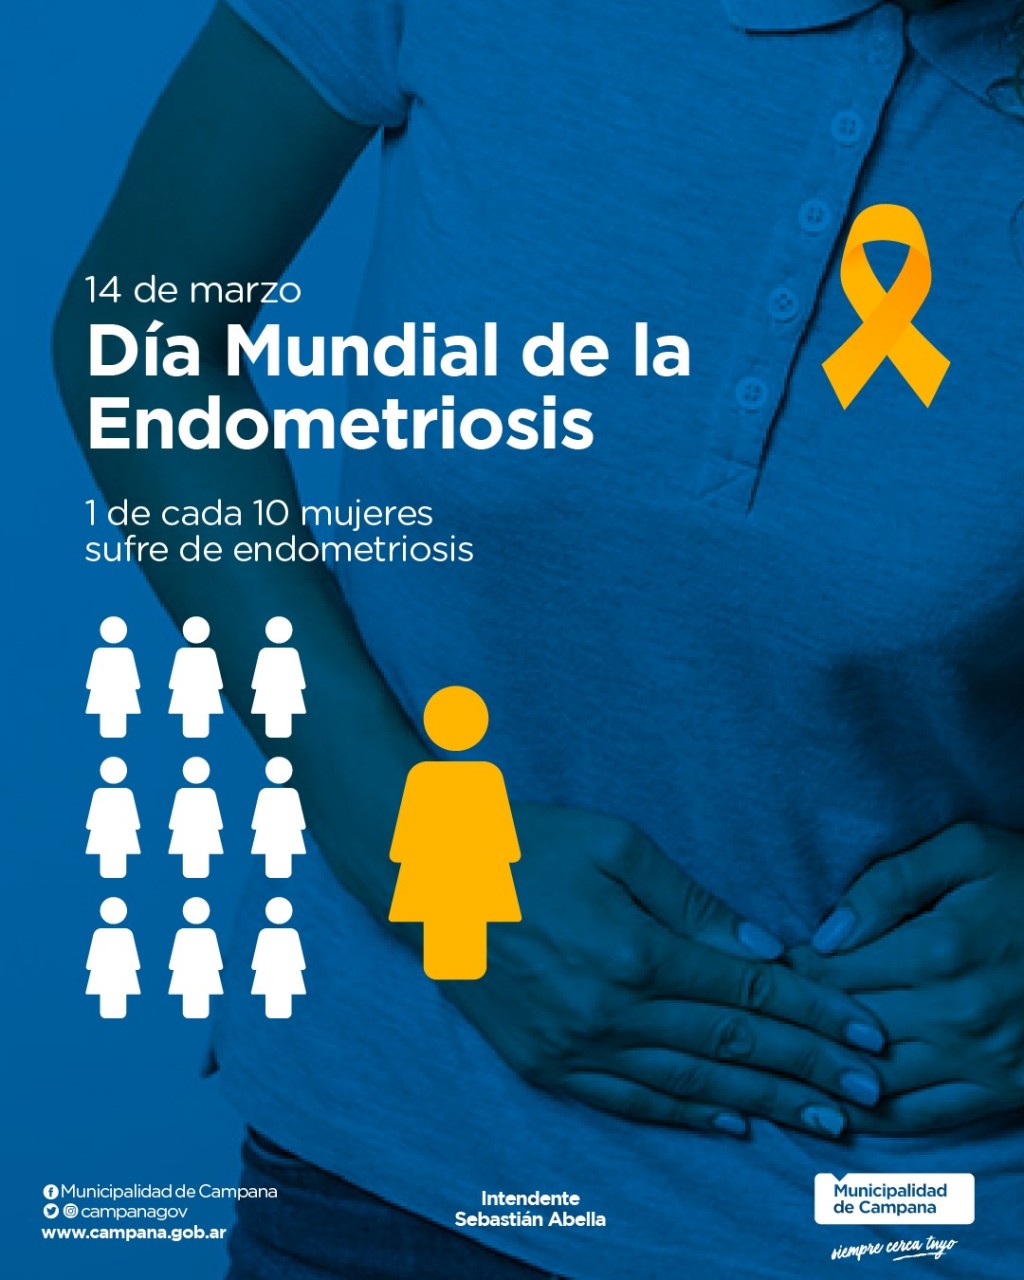 El Municipio adhiere al Día Mundial de la Endometriosis   